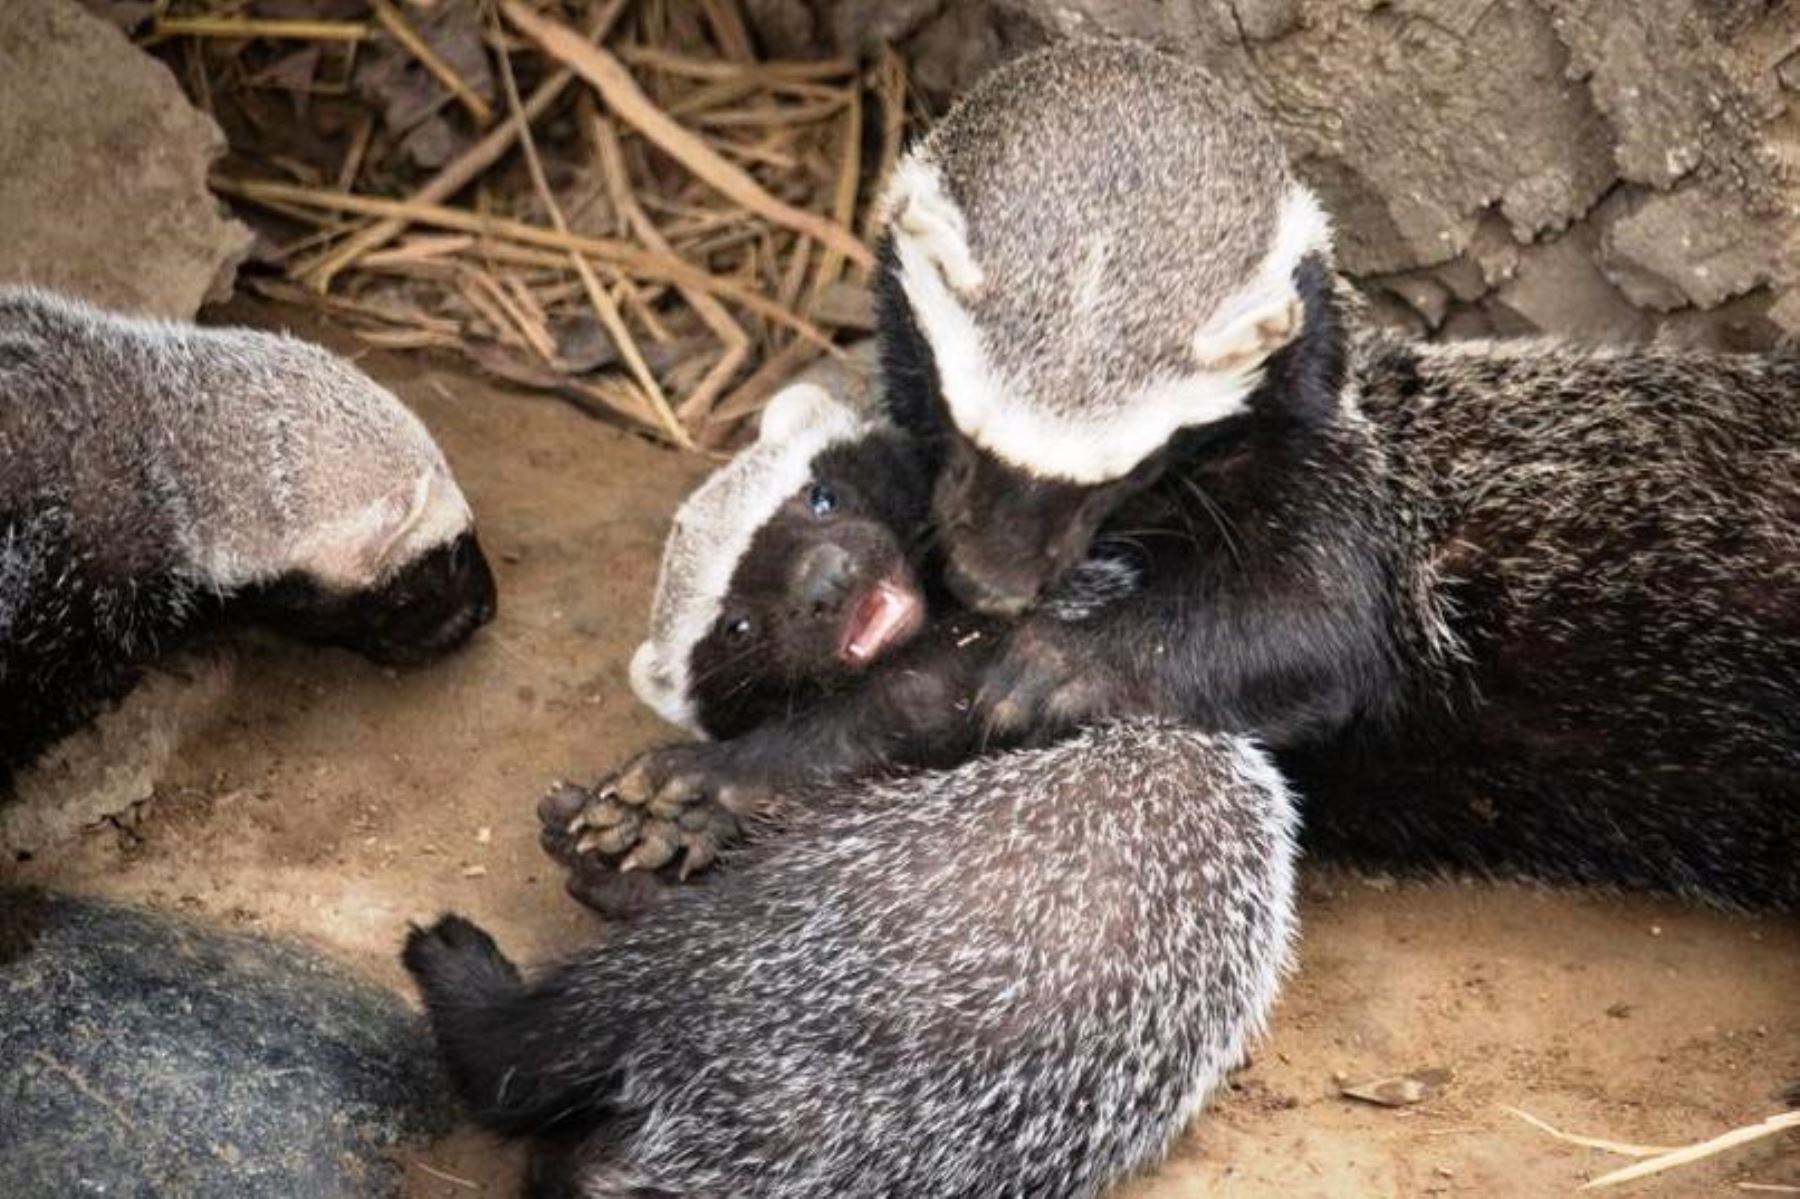 El Parque Zoológico Huachipa presentó a los bebés trillizos de hurón, de un mes de nacidos, que no pueden ser tomados como mascotas, al ser considerada una especie silvestre, pero que viven felices junto a su madre en un espacio especialmente acondicionado para ellos.
Foto:ANDINA/Parque de las Leyendas